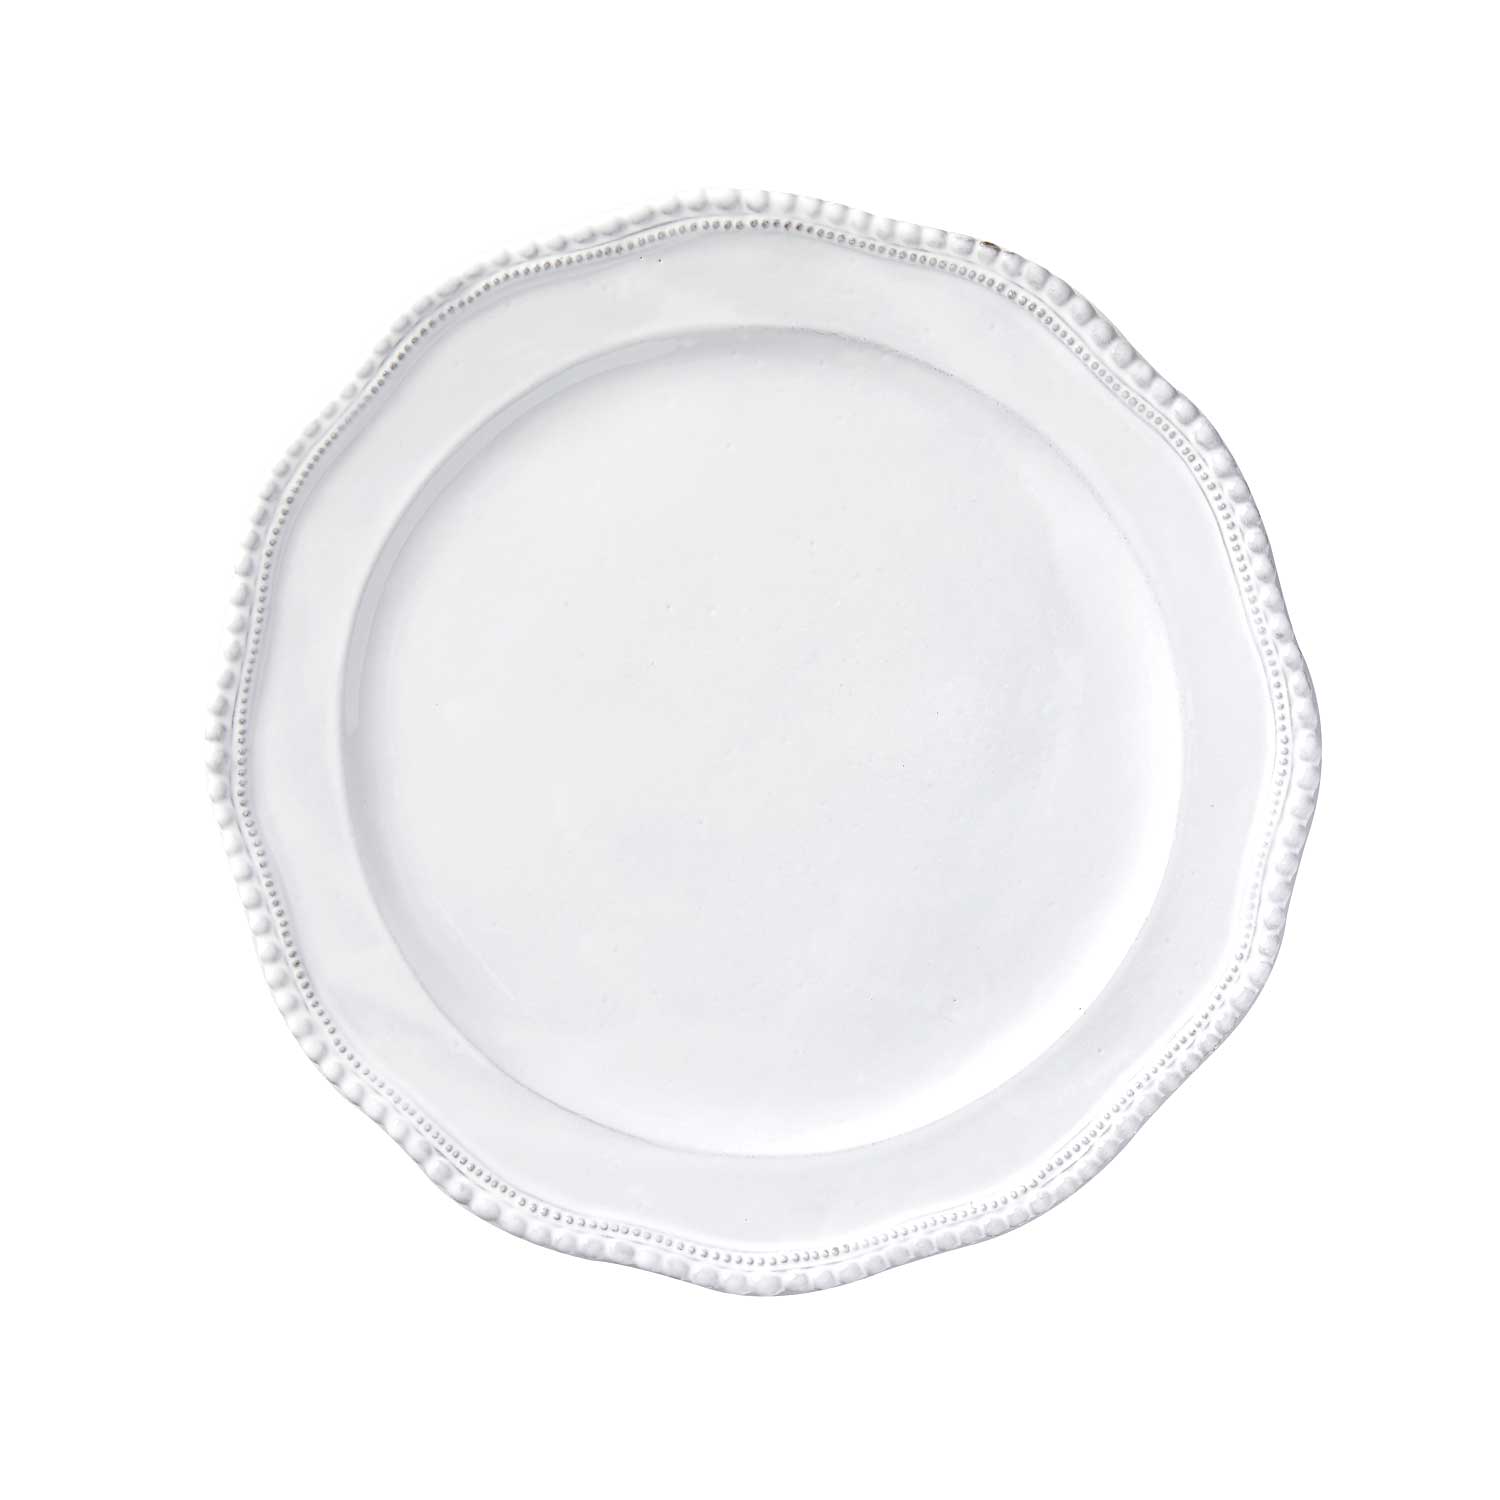 [Clarabelle] Large Dinner Plate